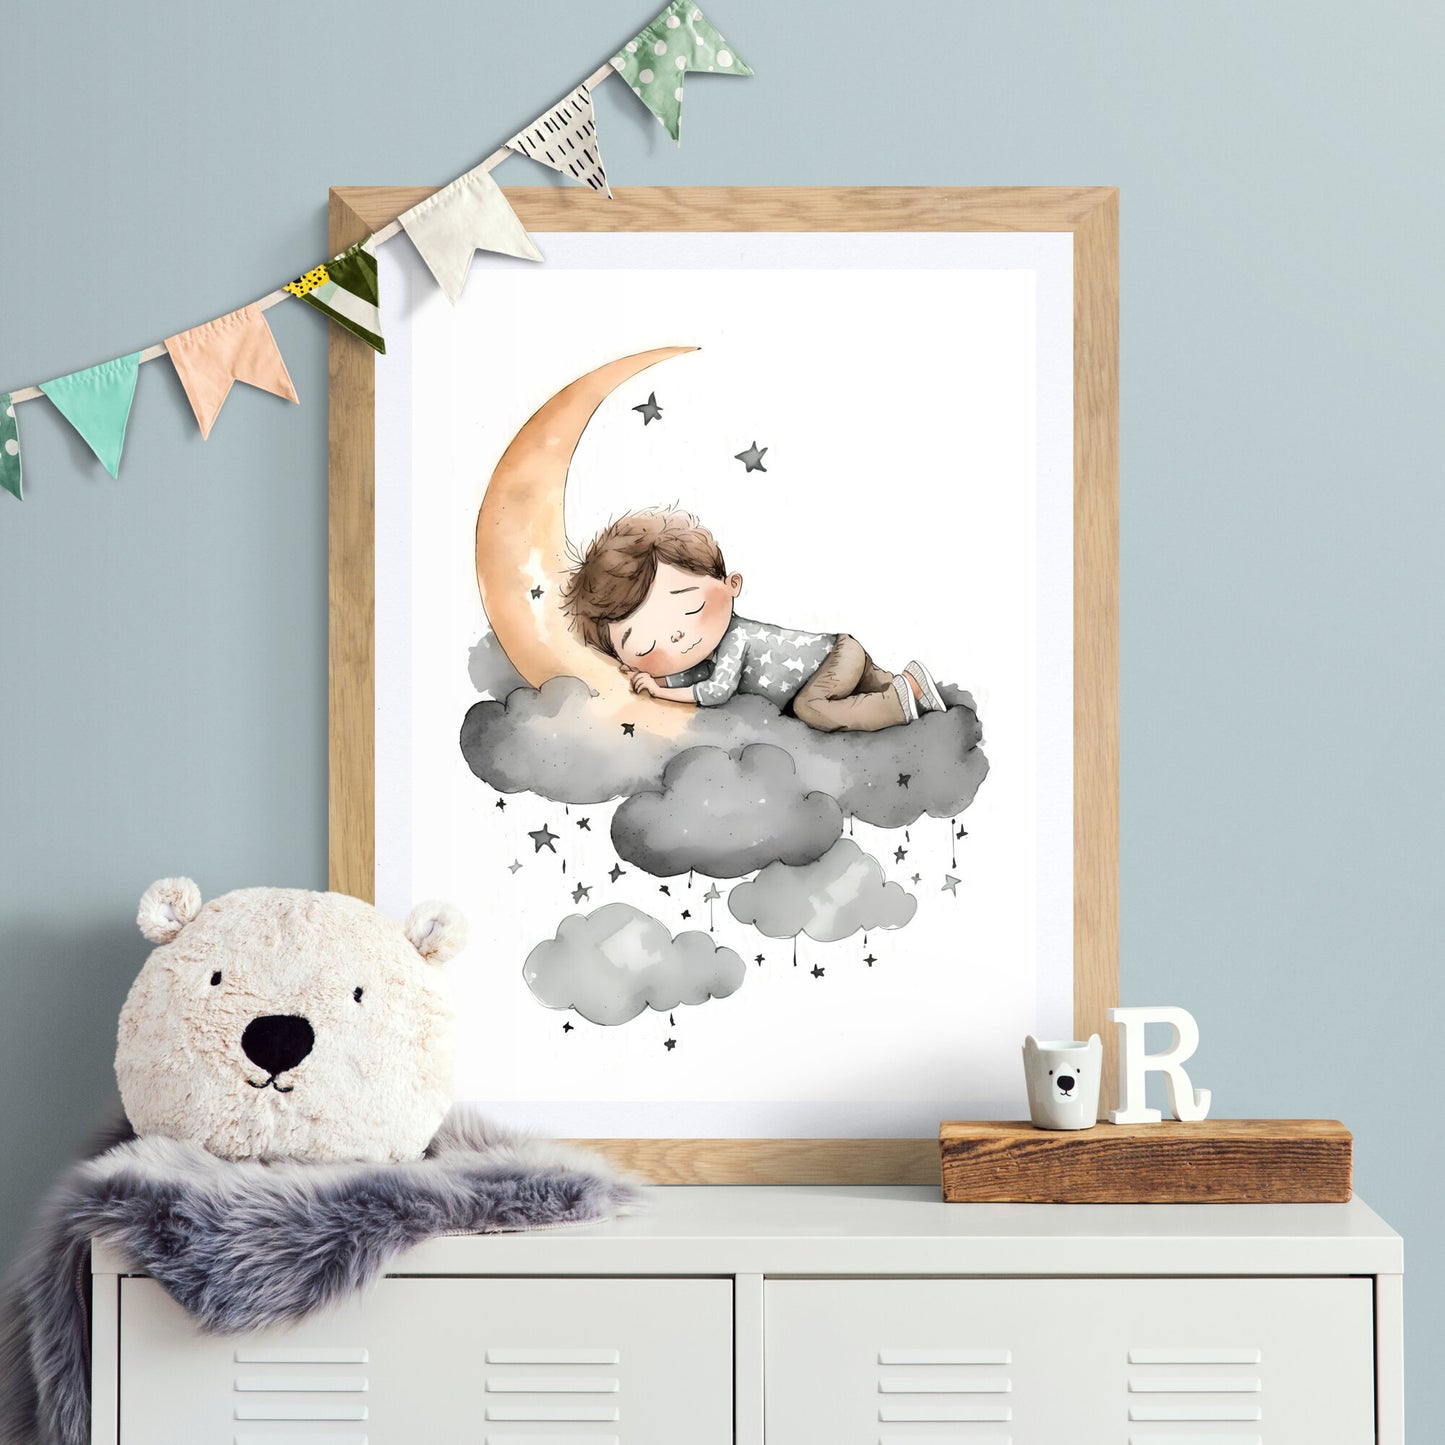 Junge schlafender Mond Sterne Wandkunst Kinderzimmer Mond Wolken Sterne Druck Kinderzimmer Dekor Papier Posterdrucke